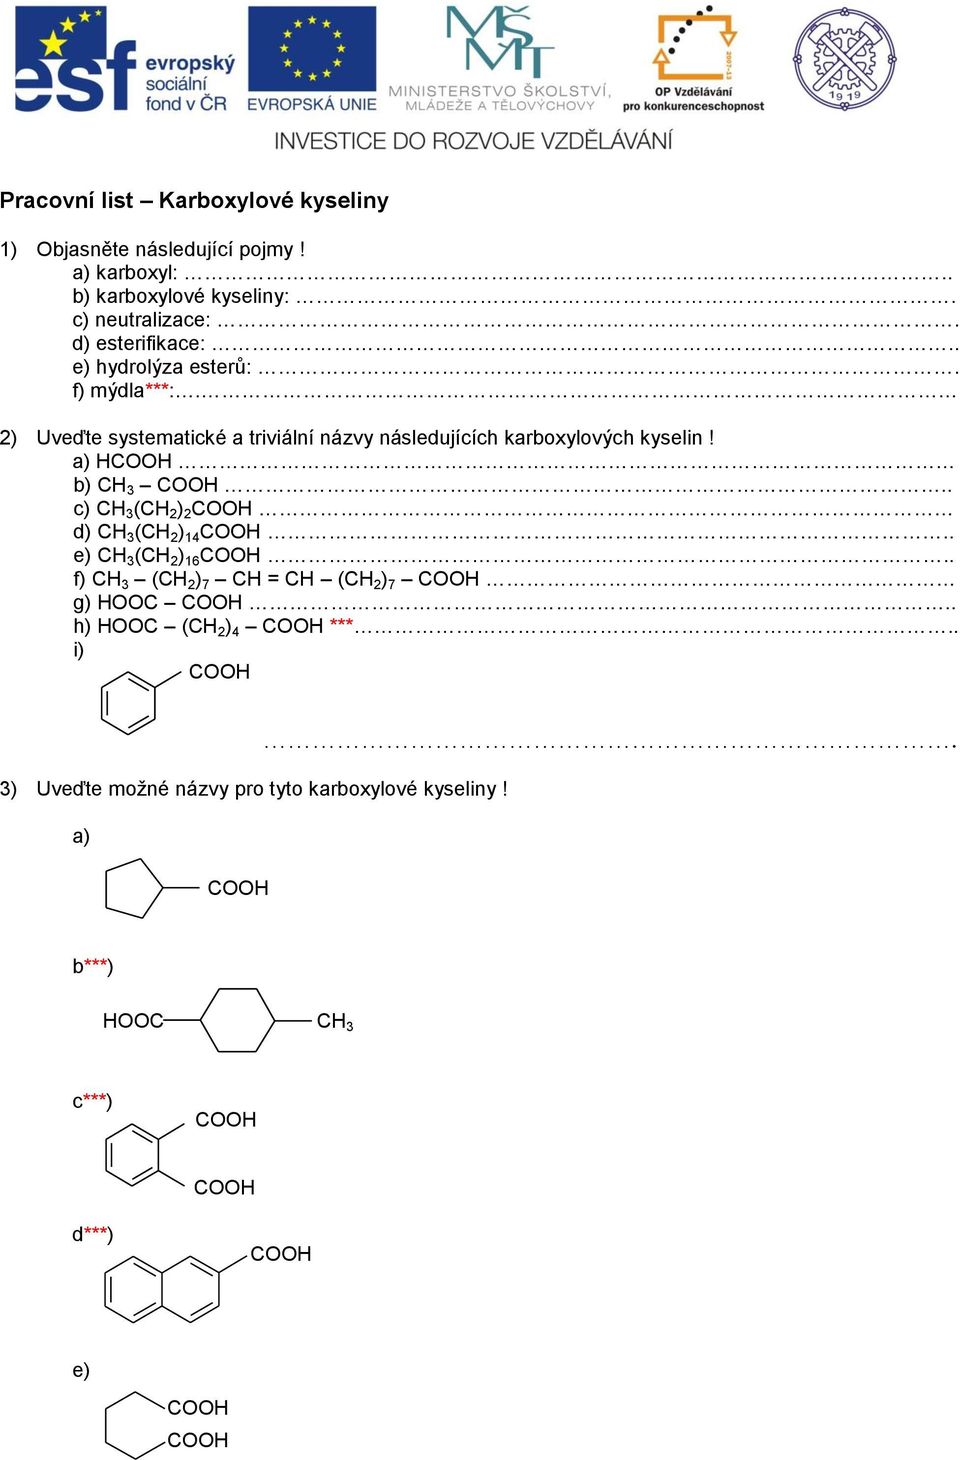 2) Uveďte systematické a triviální názvy následujících karboxylových kyselin! a) b) 3.